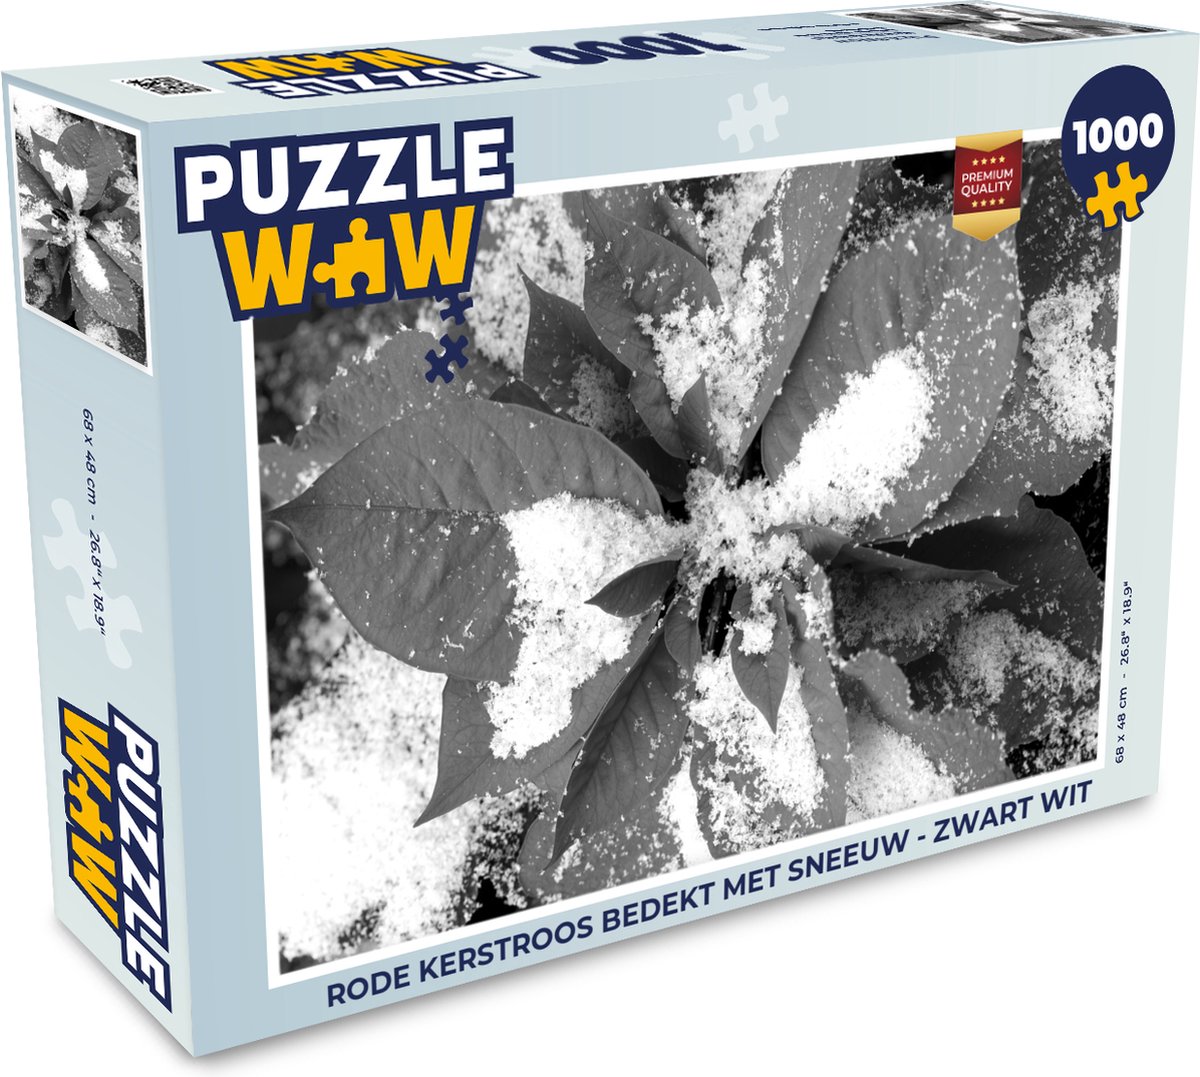 Puzzel Rode Kerstroos bedekt met sneeuw - zwart wit - Legpuzzel - Puzzel 1000 stukjes volwassenen - Kerst Puzzel - Christmas Puzzel